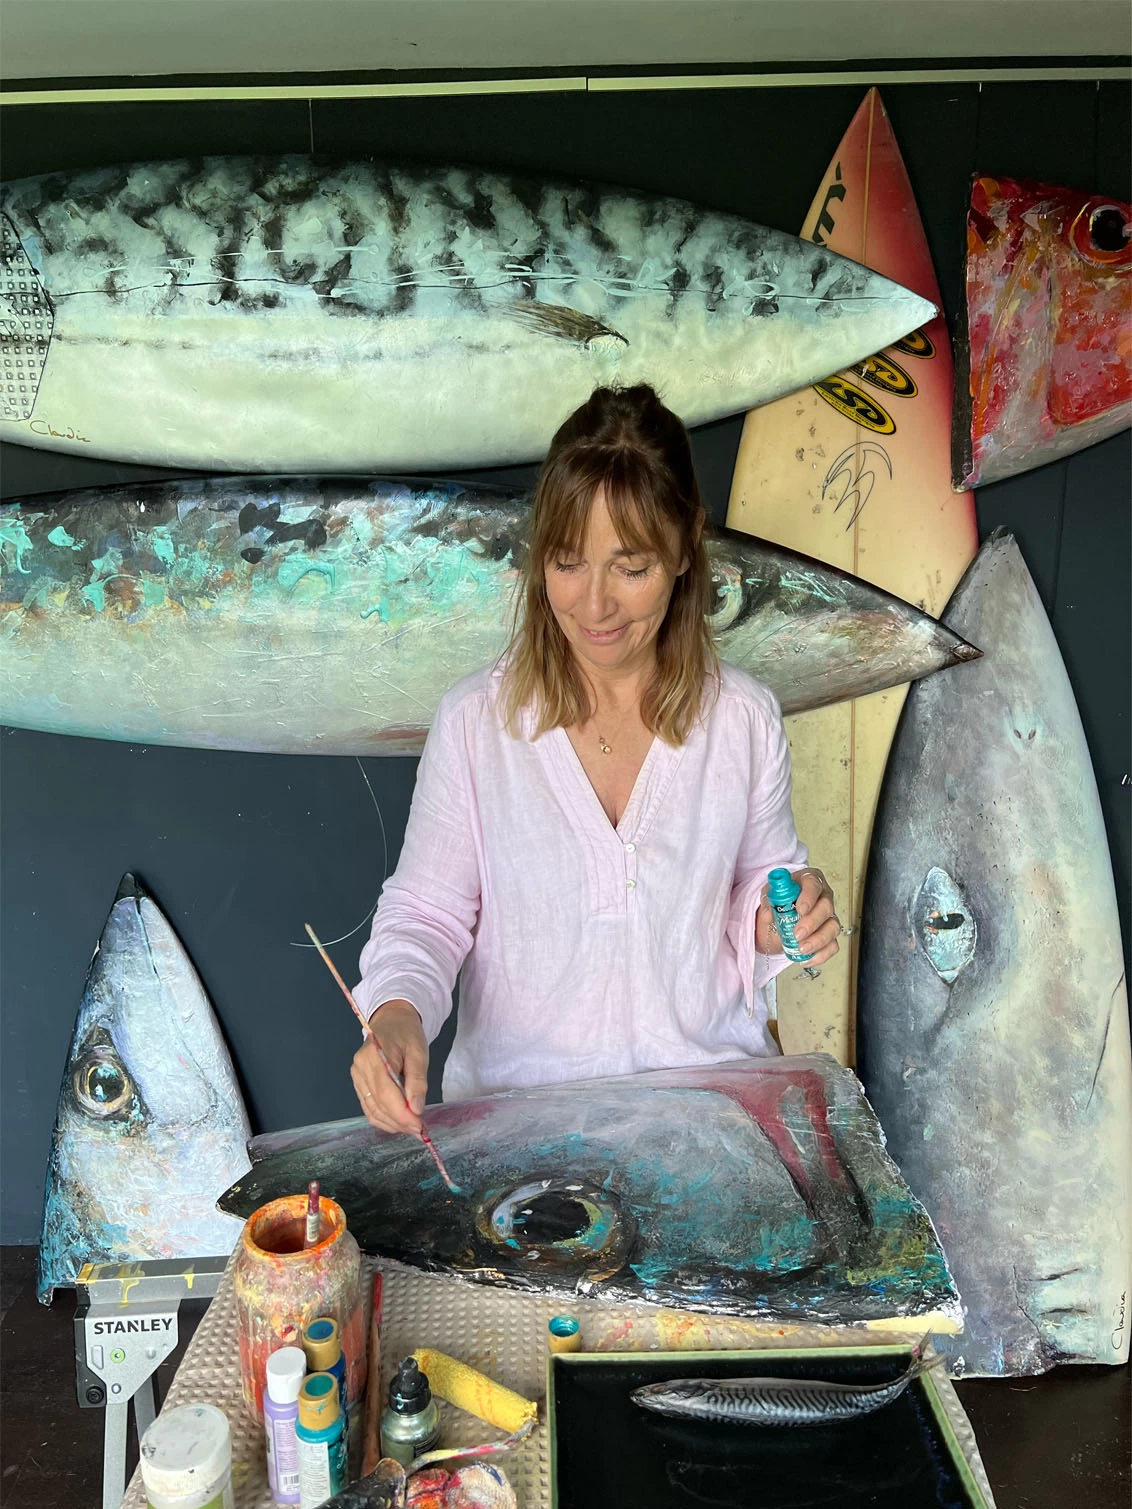 claudia painting fish in her studio